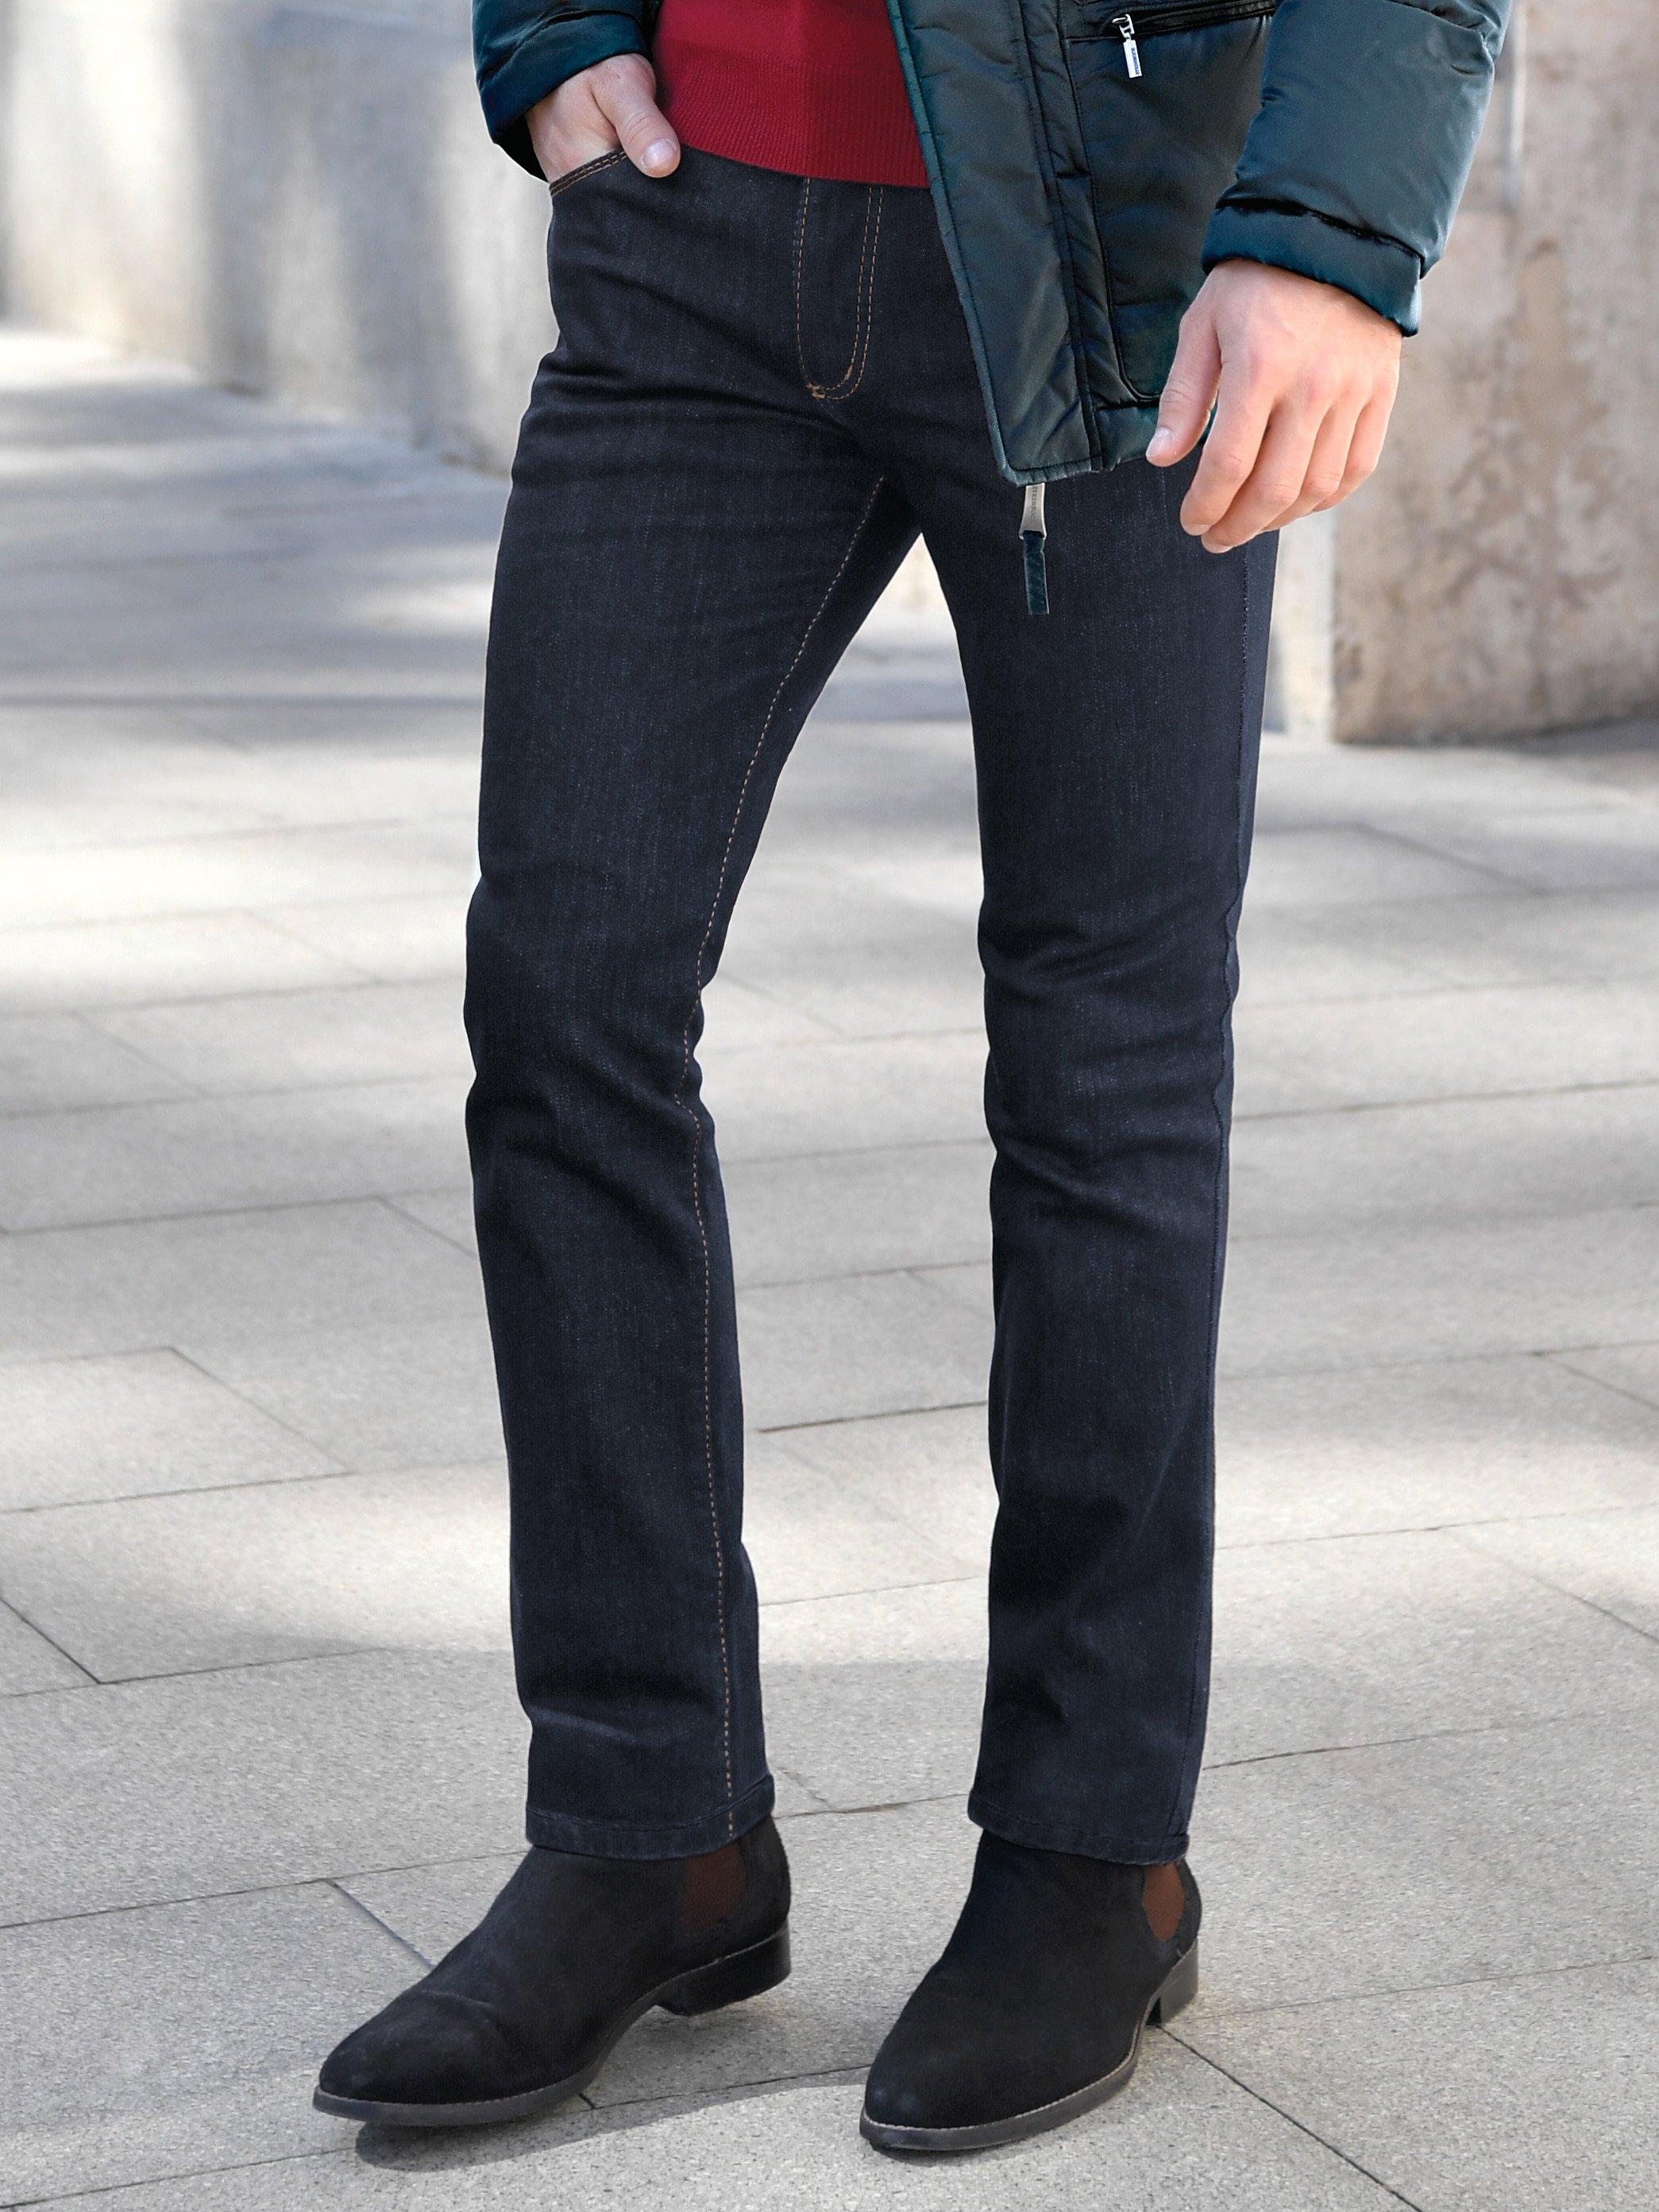 JOKER - Jeans Modell FREDDY Inch 34